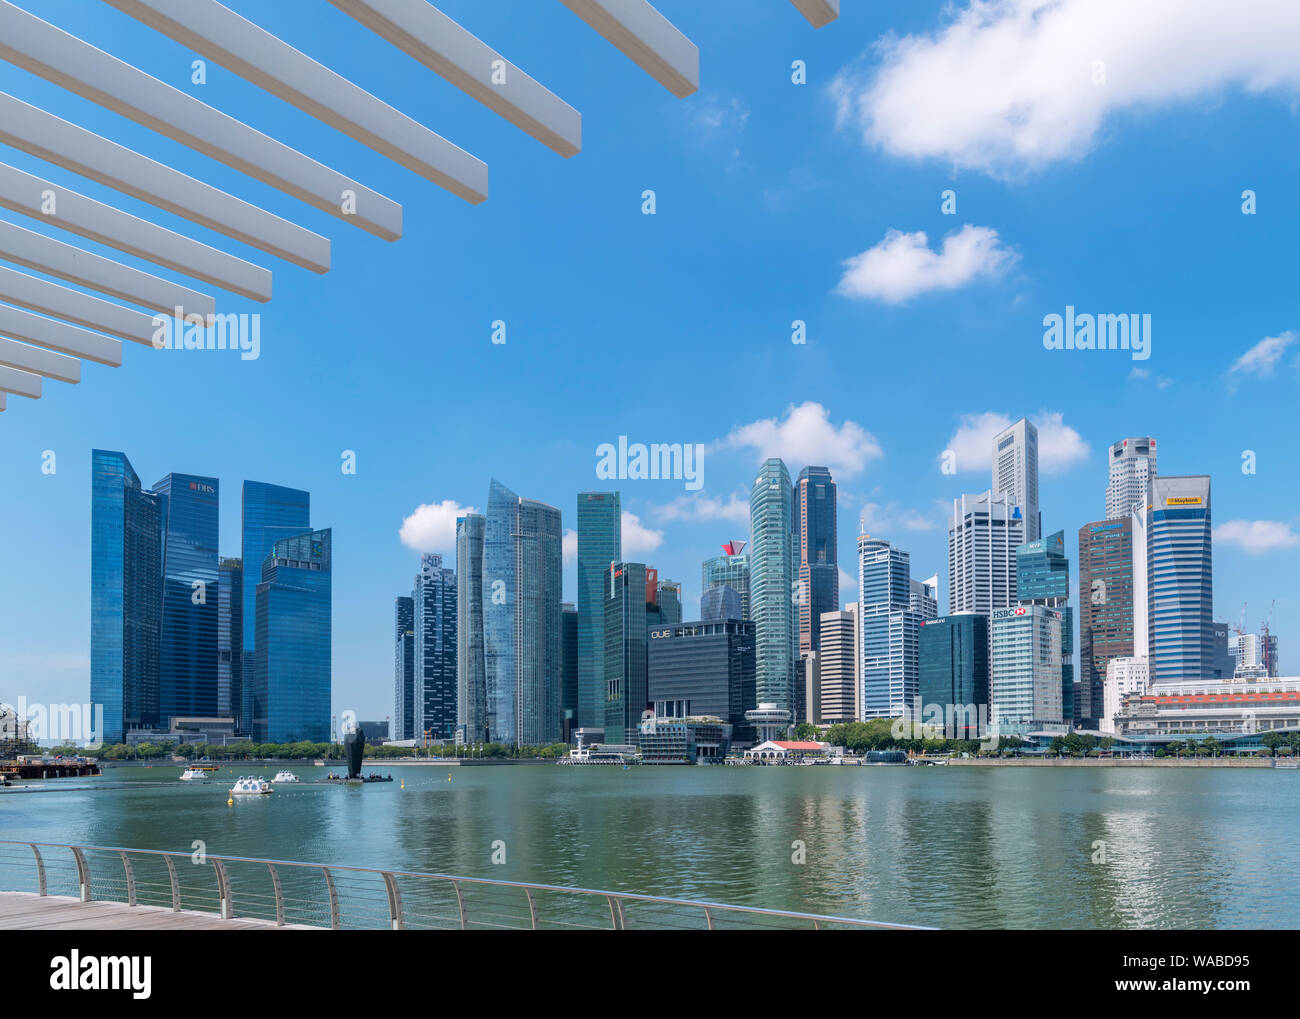 El distrito central de negocios (CBD) de Marina Bay, la ciudad de Singapur, Singapur Foto de stock